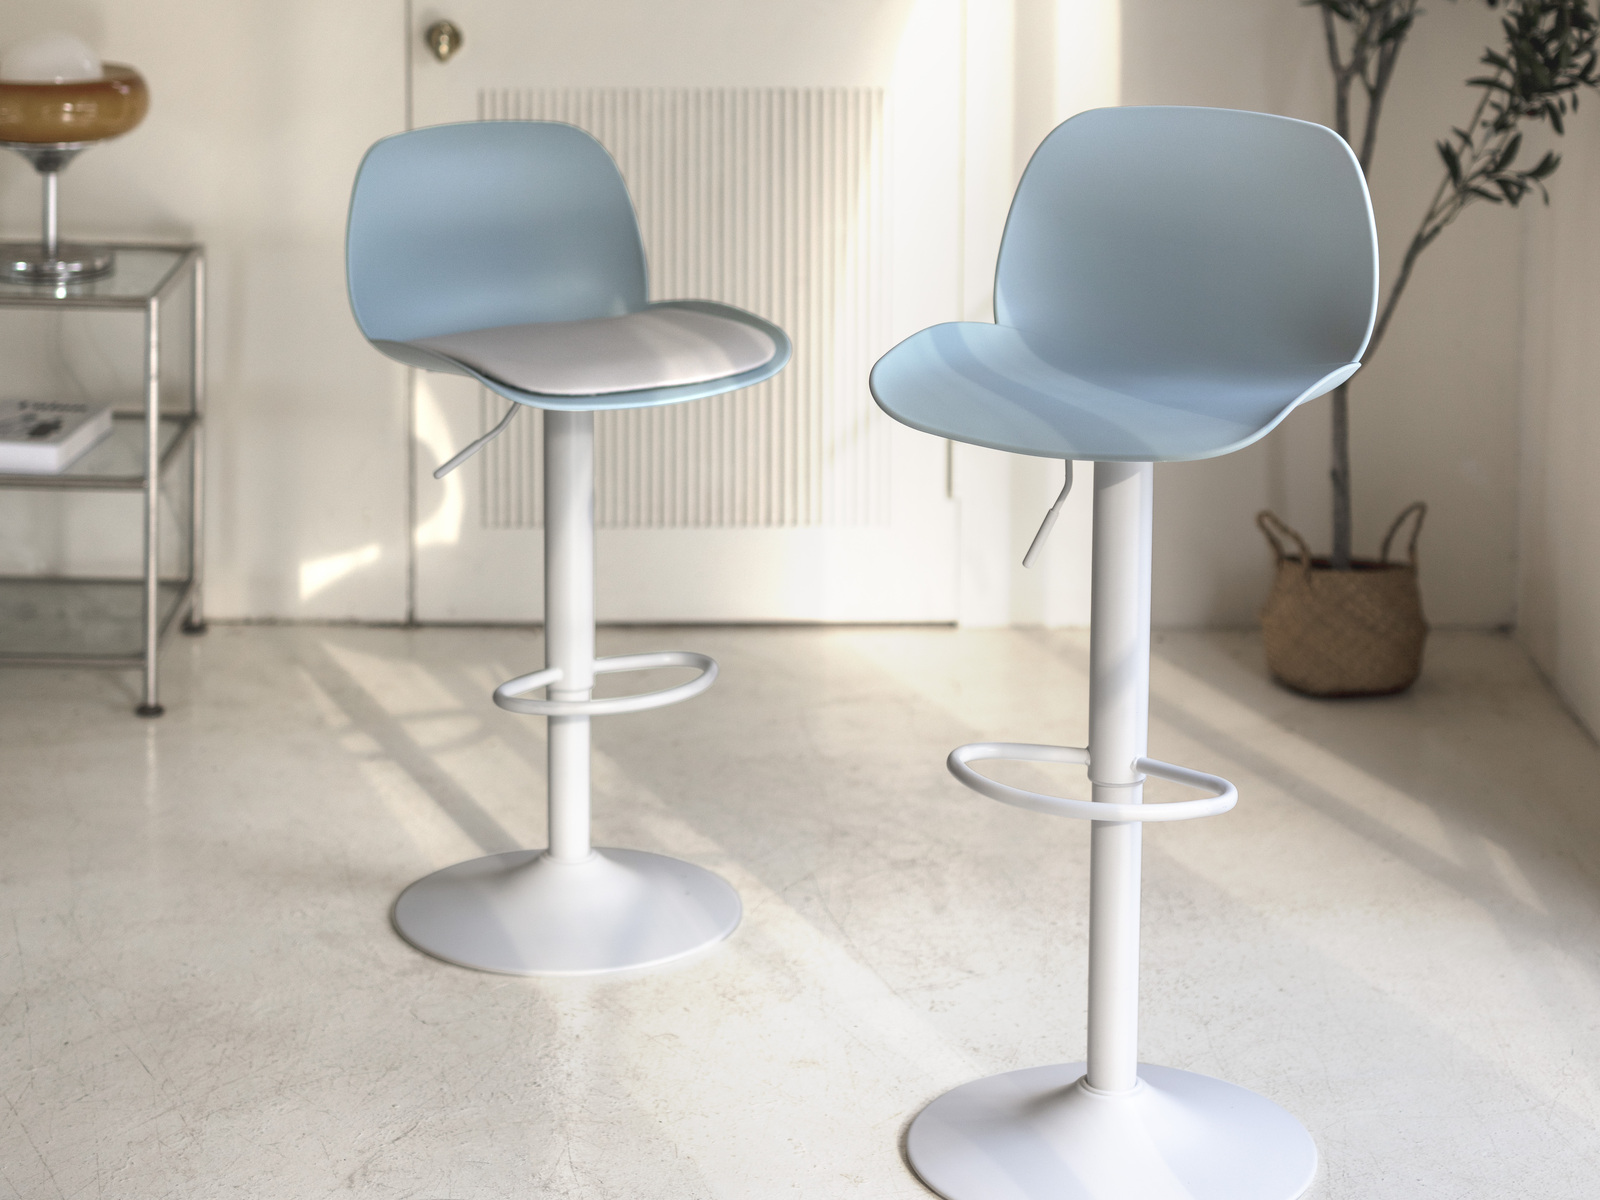 520a2903 Köln Adjustable Bar stool - Lagoon Design Furniture